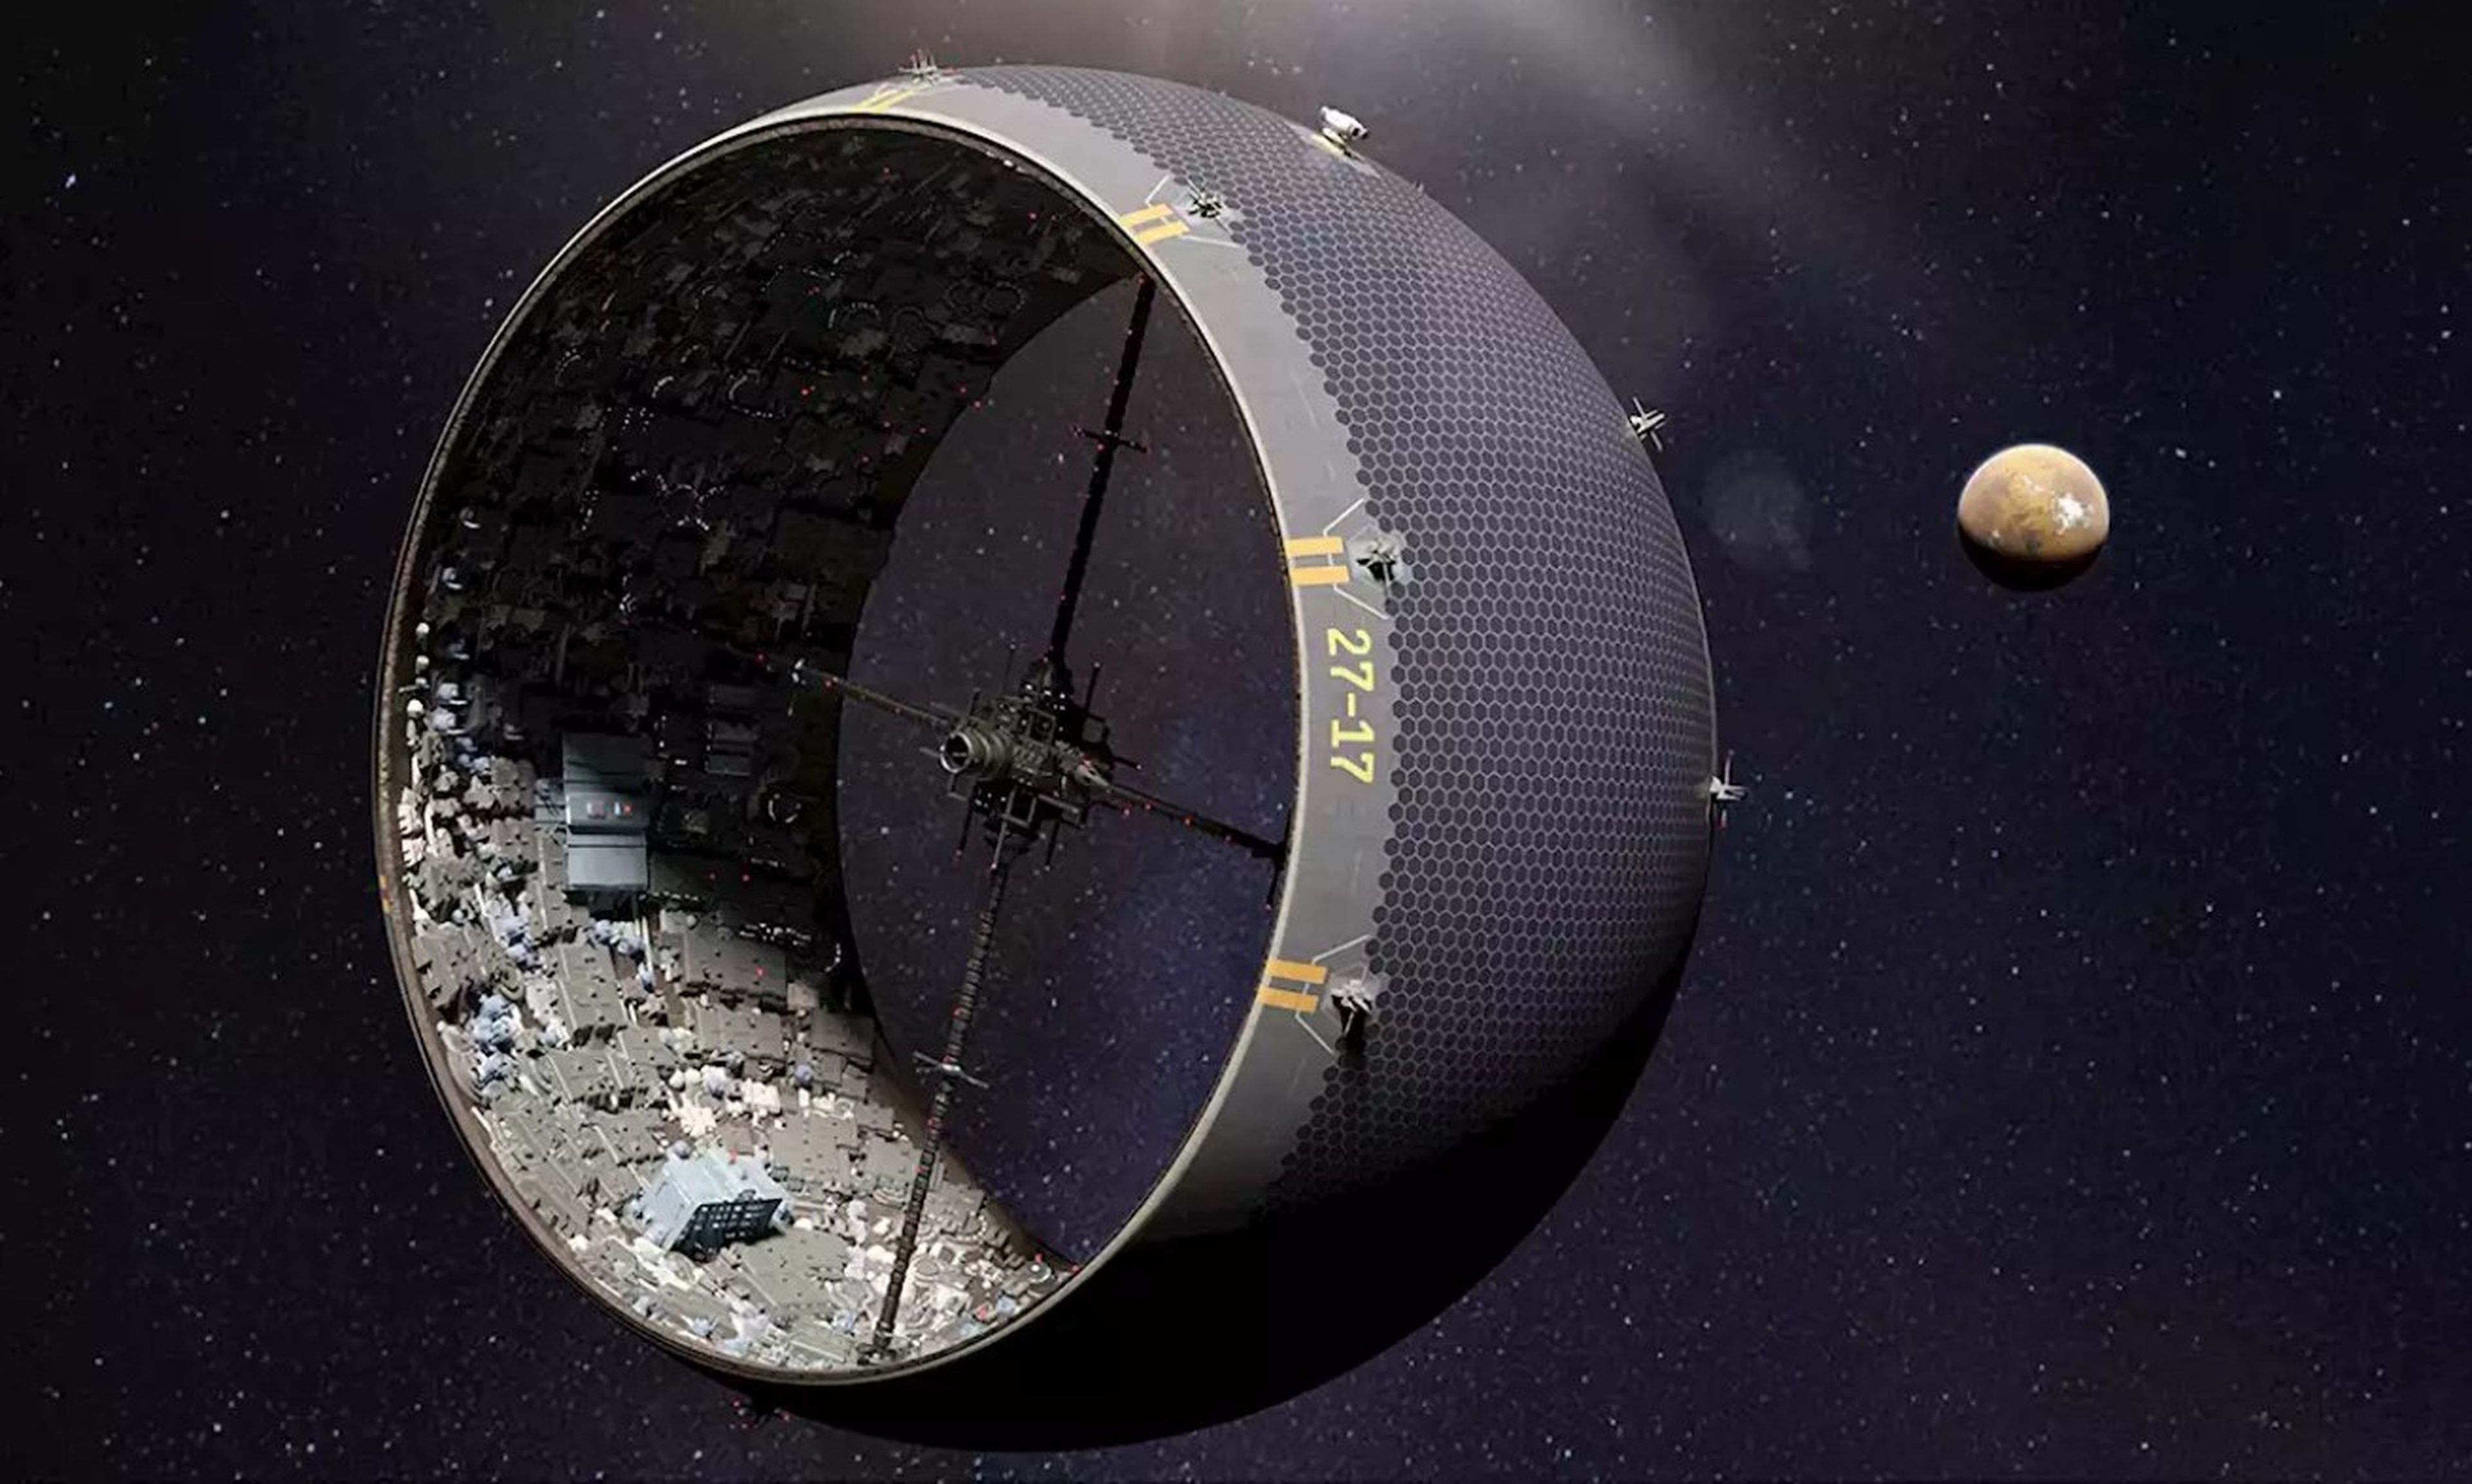 Construir ciudades en asteroides: los científicos afirman que podría ser viable